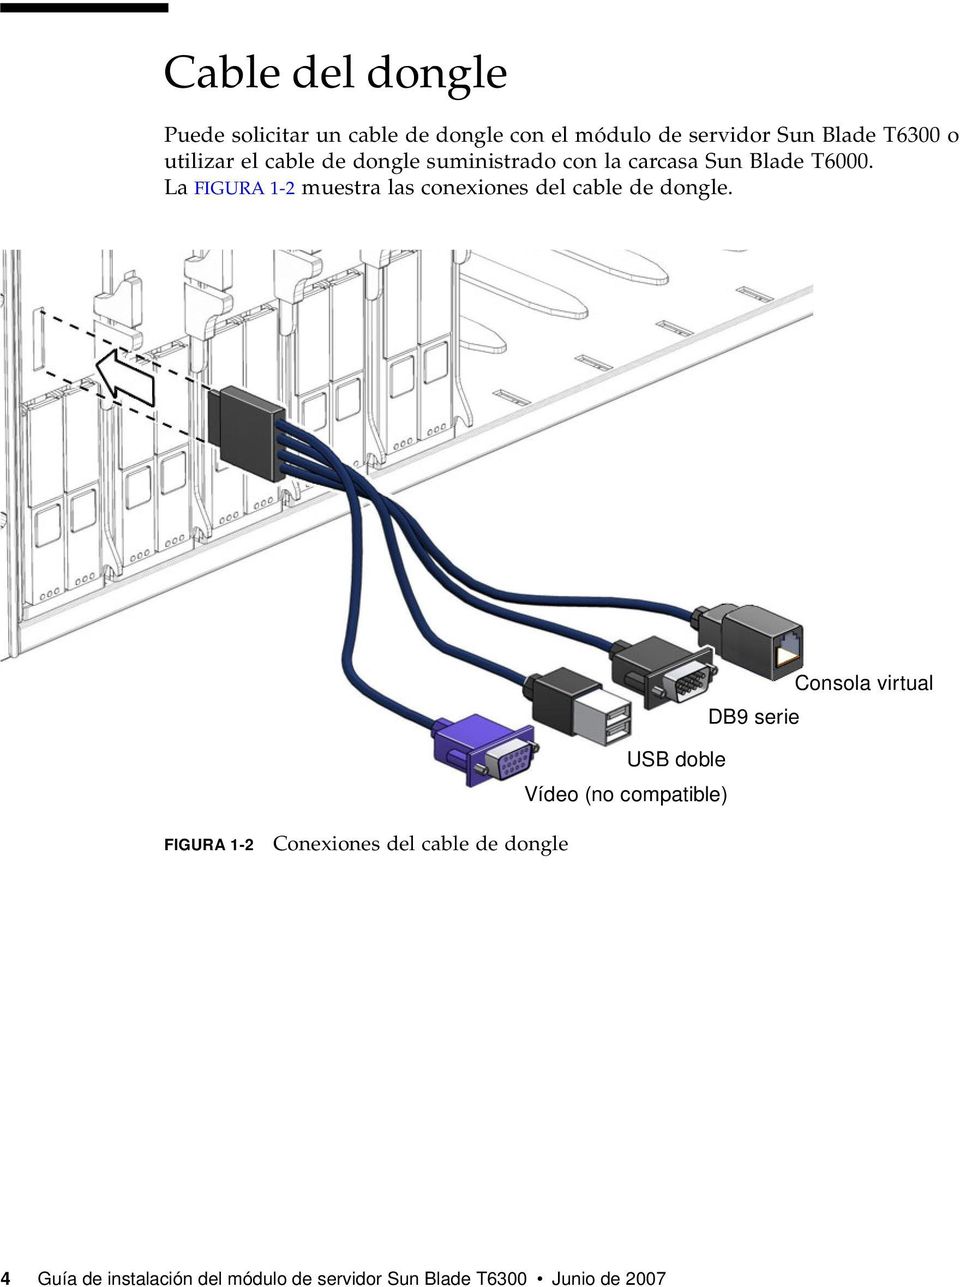 La FIGURA 1-2 muestra las conexiones del cable de dongle.